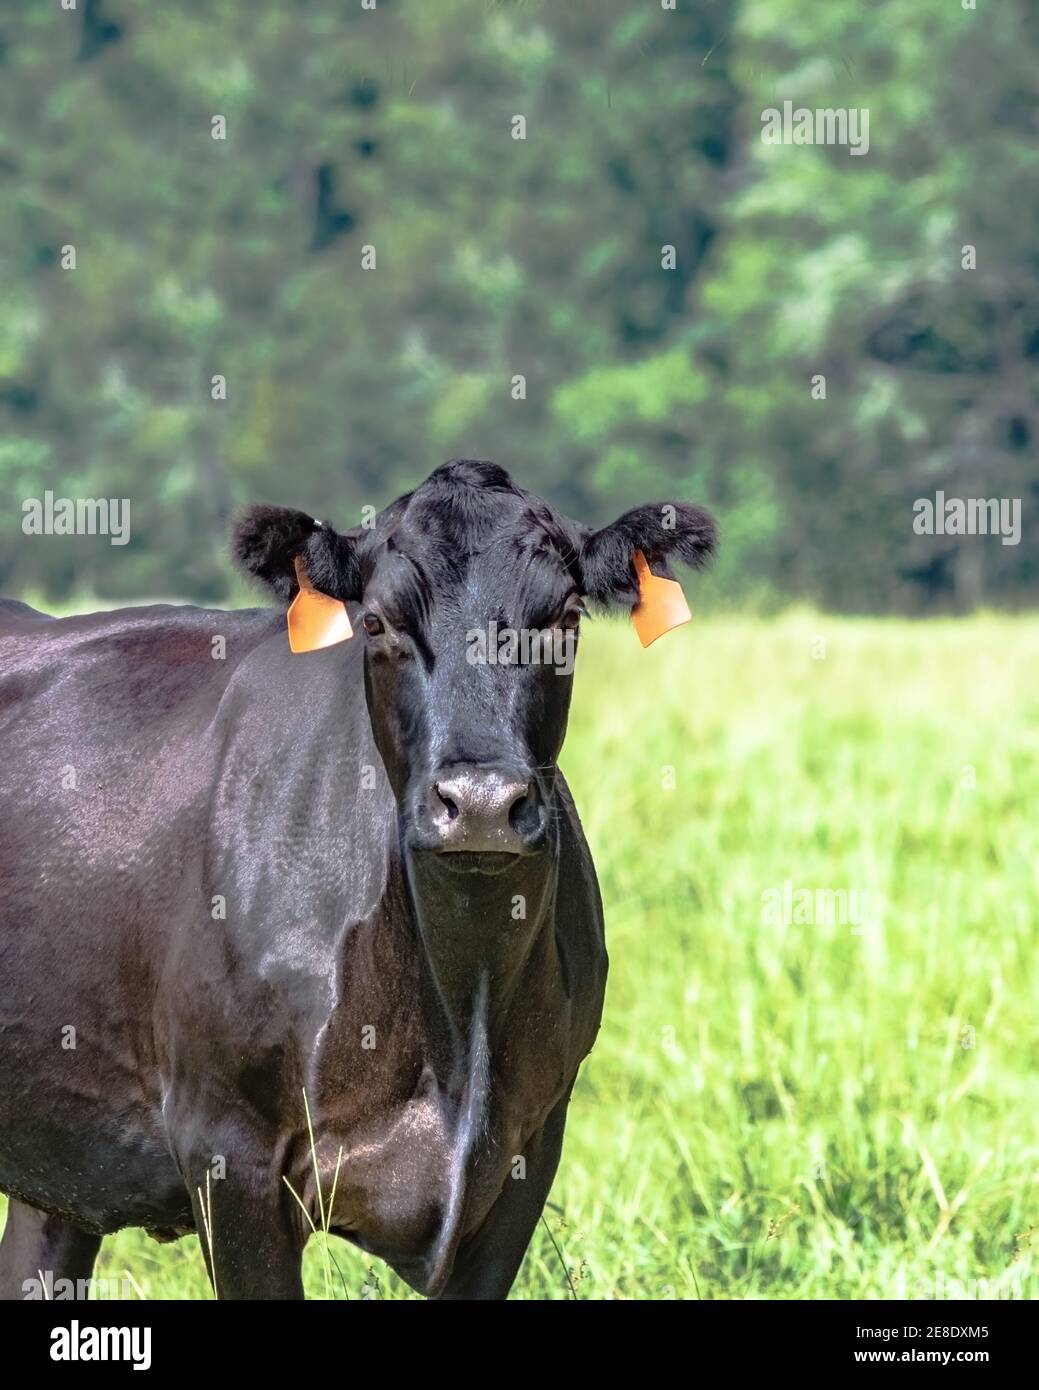 Vacas Angus negra mirando a la cámara a la izquierda con el área en blanco a la derecha - formato vertical Foto de stock